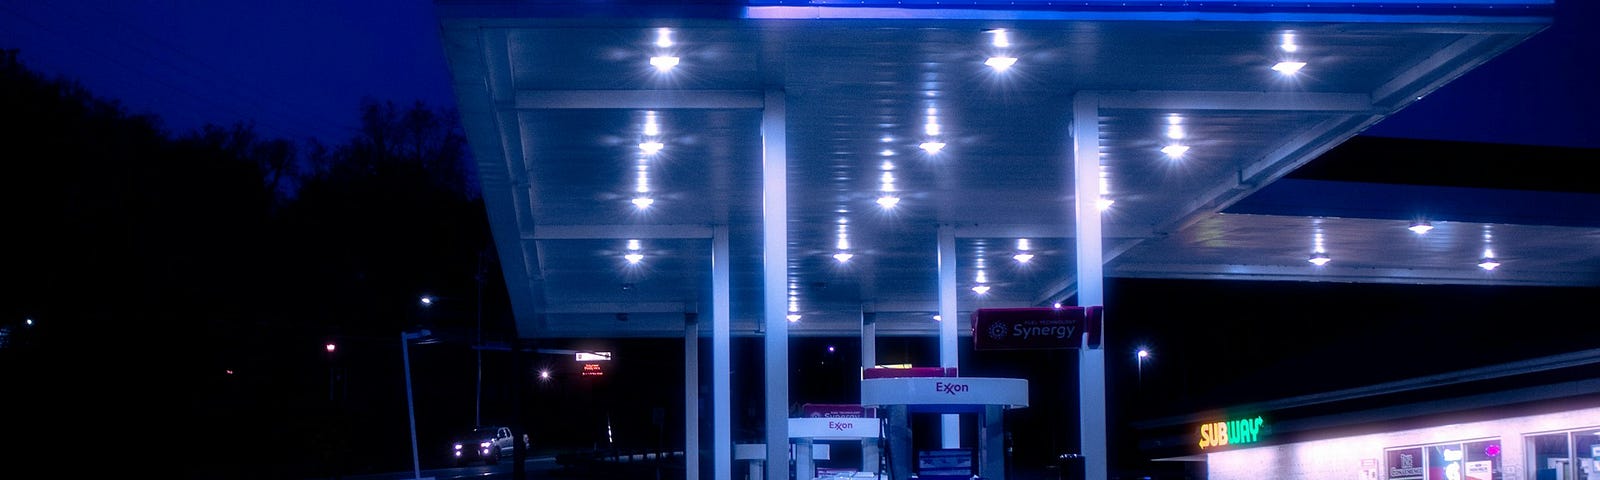 IMAGE: An Exxon petrol station at night